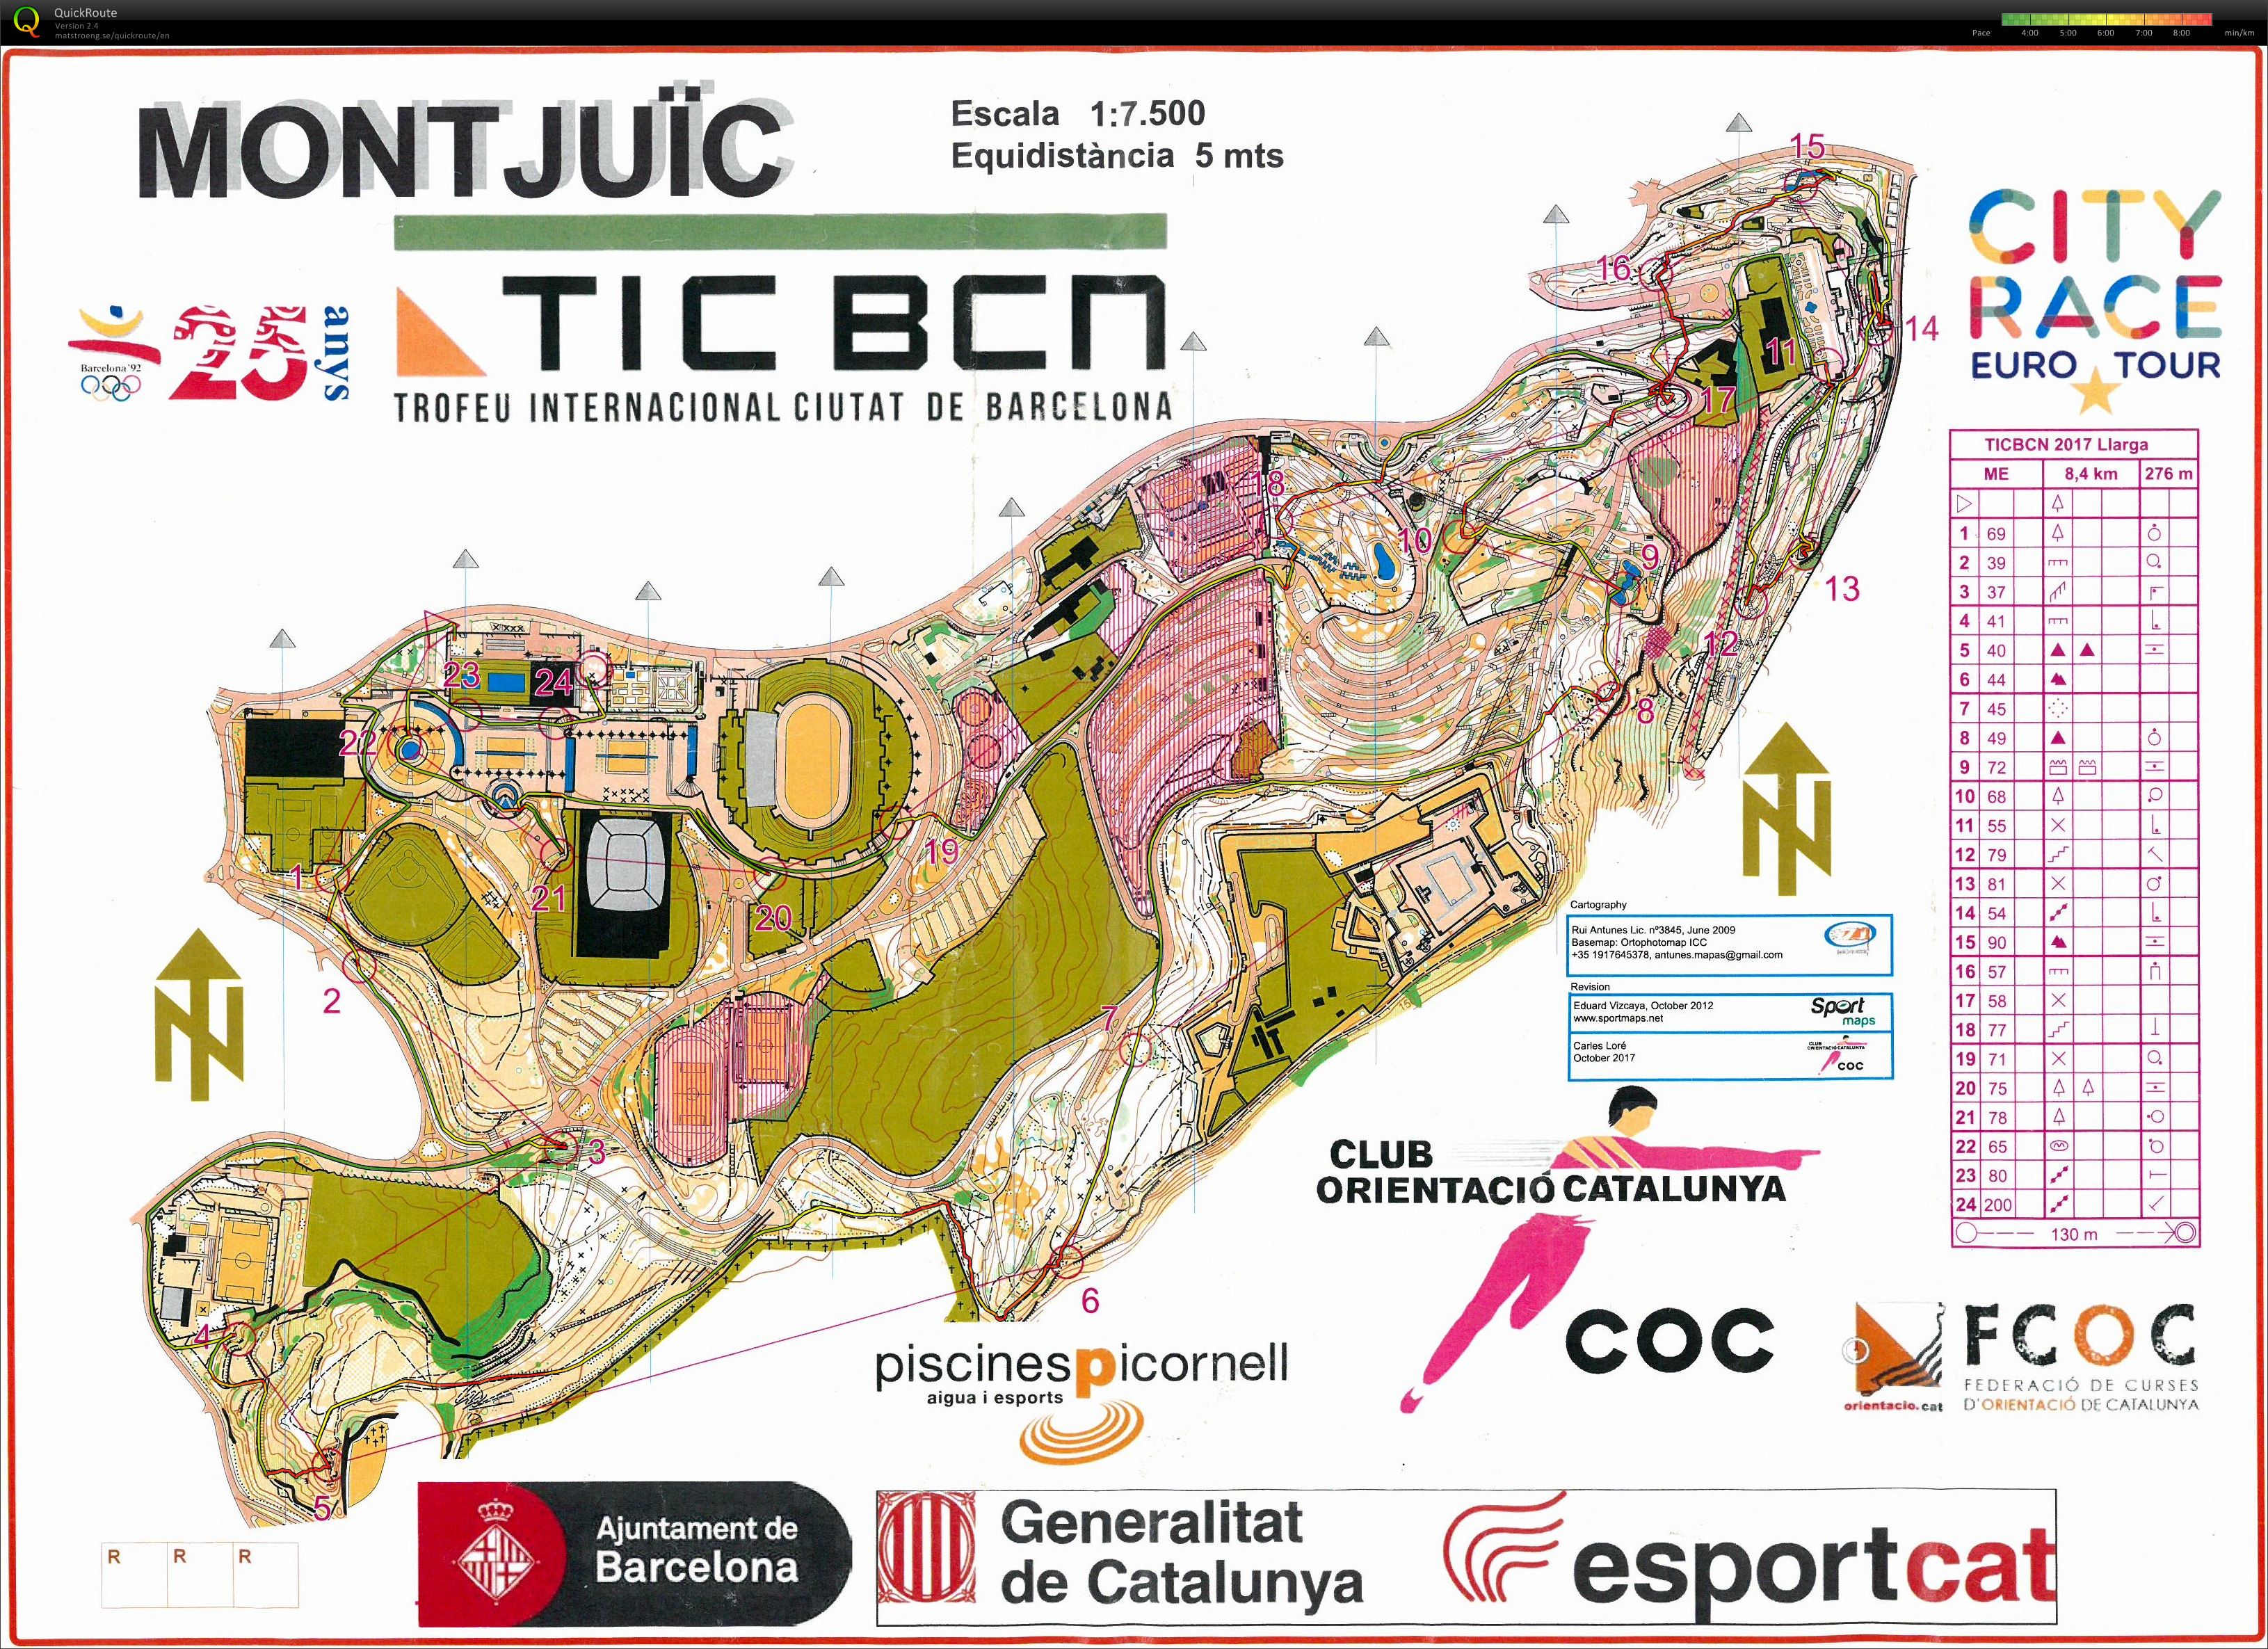 TIC BCN 2017 Montjuic E2 (05.11.2017)